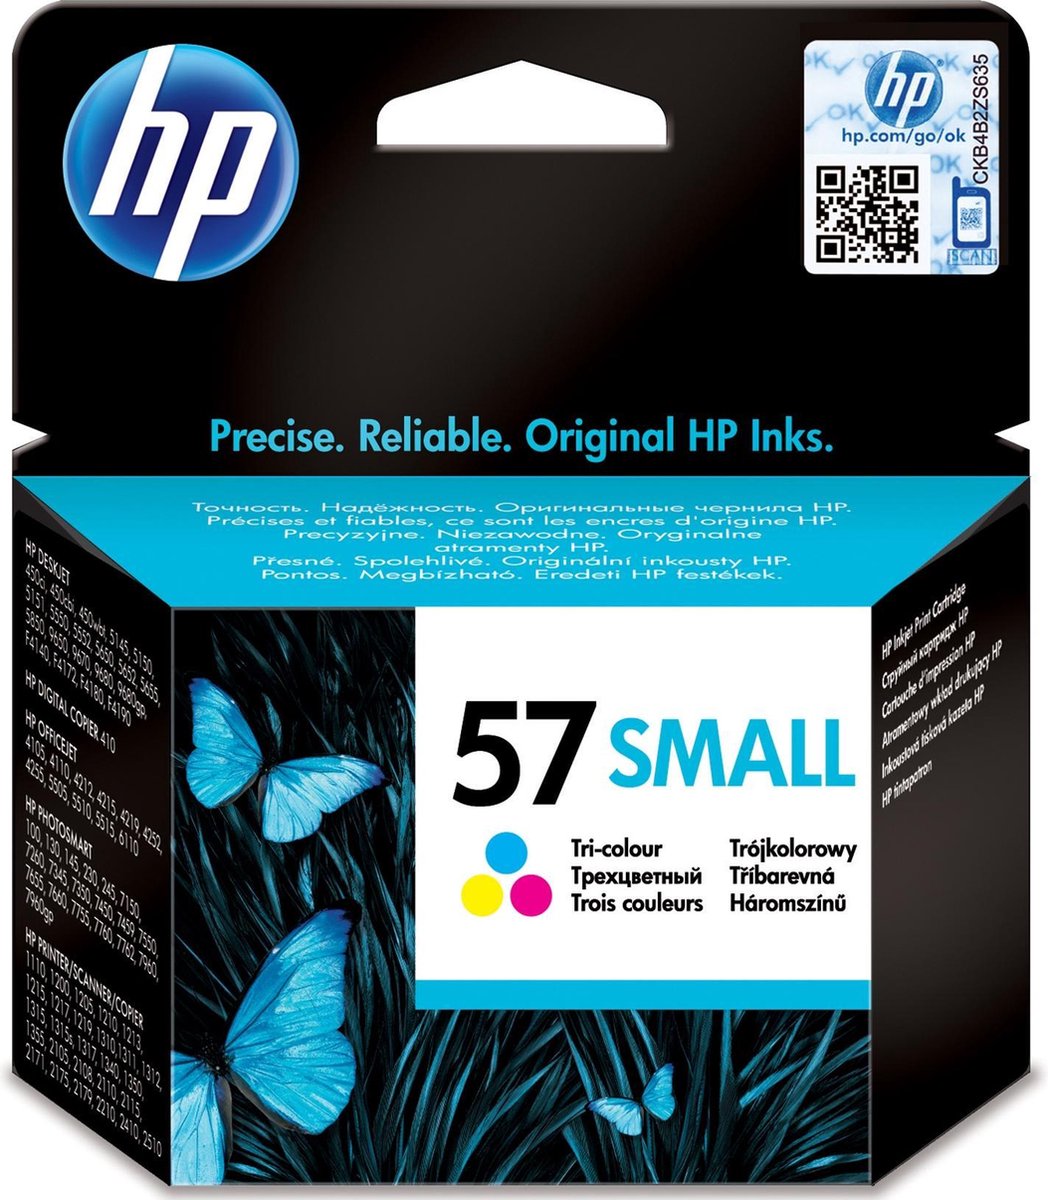 HP 57 Small - Inktcartridge - Kleur Cyaan, Magenta, Geel